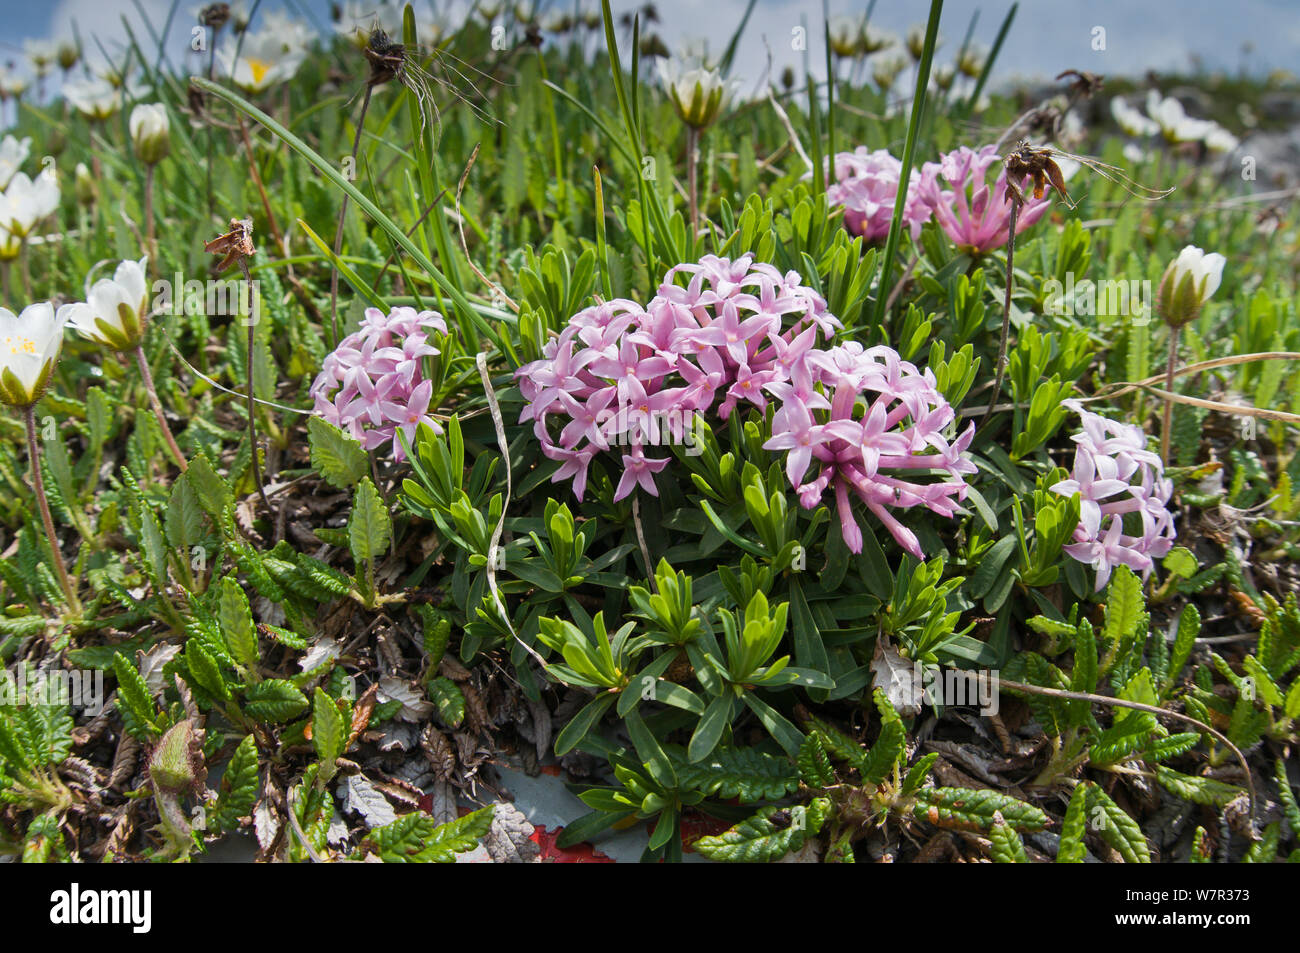 Garland flower (Daphne cneorum) in flower, Monte Spinale, alpine zone, Madonna di Campiglio, Brenta Dolomites, Italy, July Stock Photo